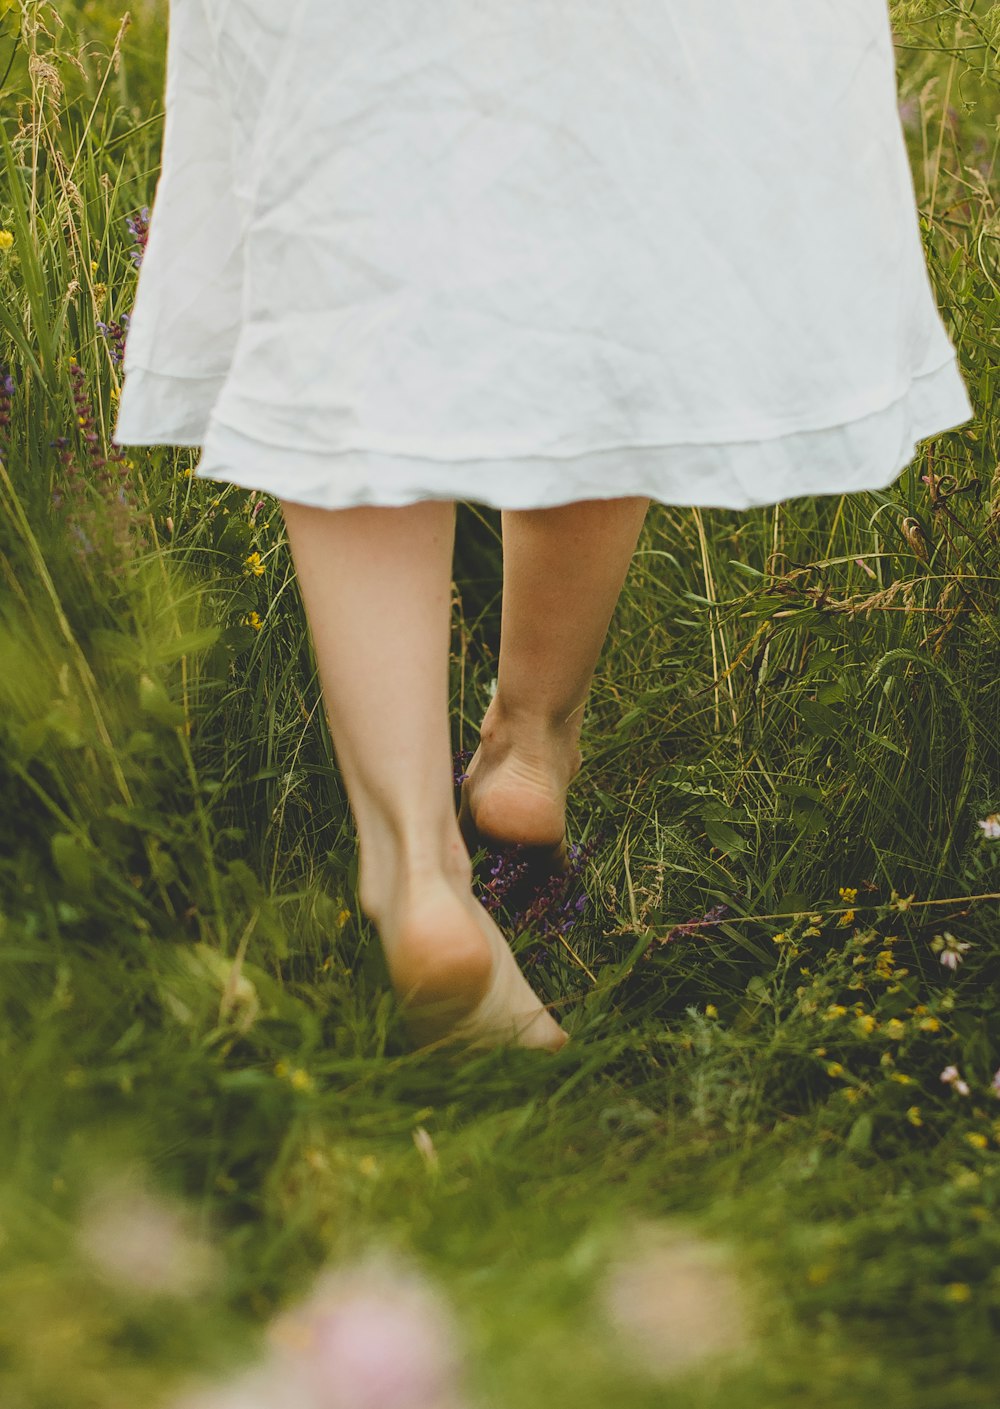 mulher no vestido branco que está no campo verde da grama durante o dia